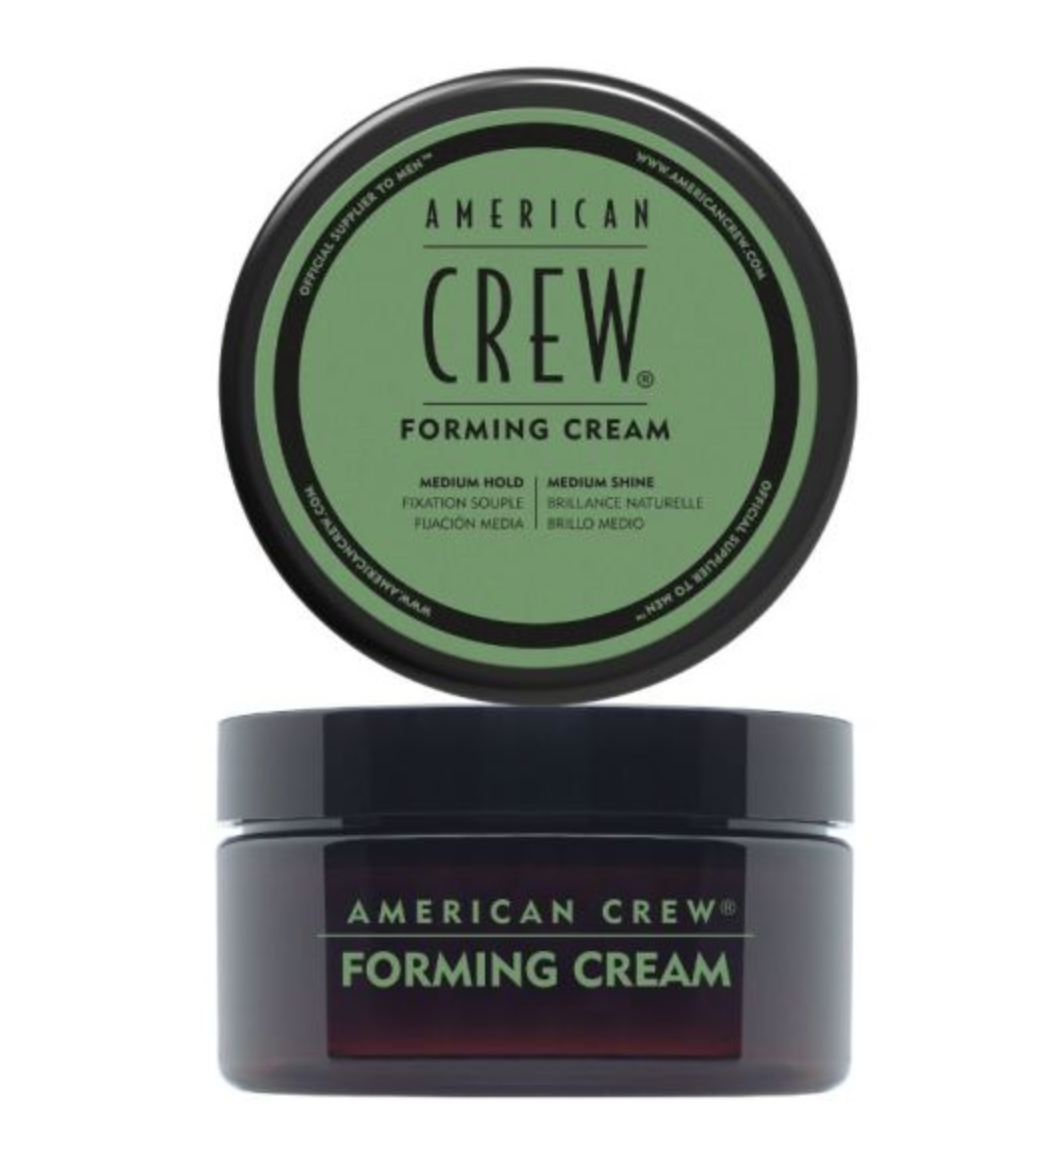 American Crew Forming Cream 85g + Bonus 50g Duo Pack